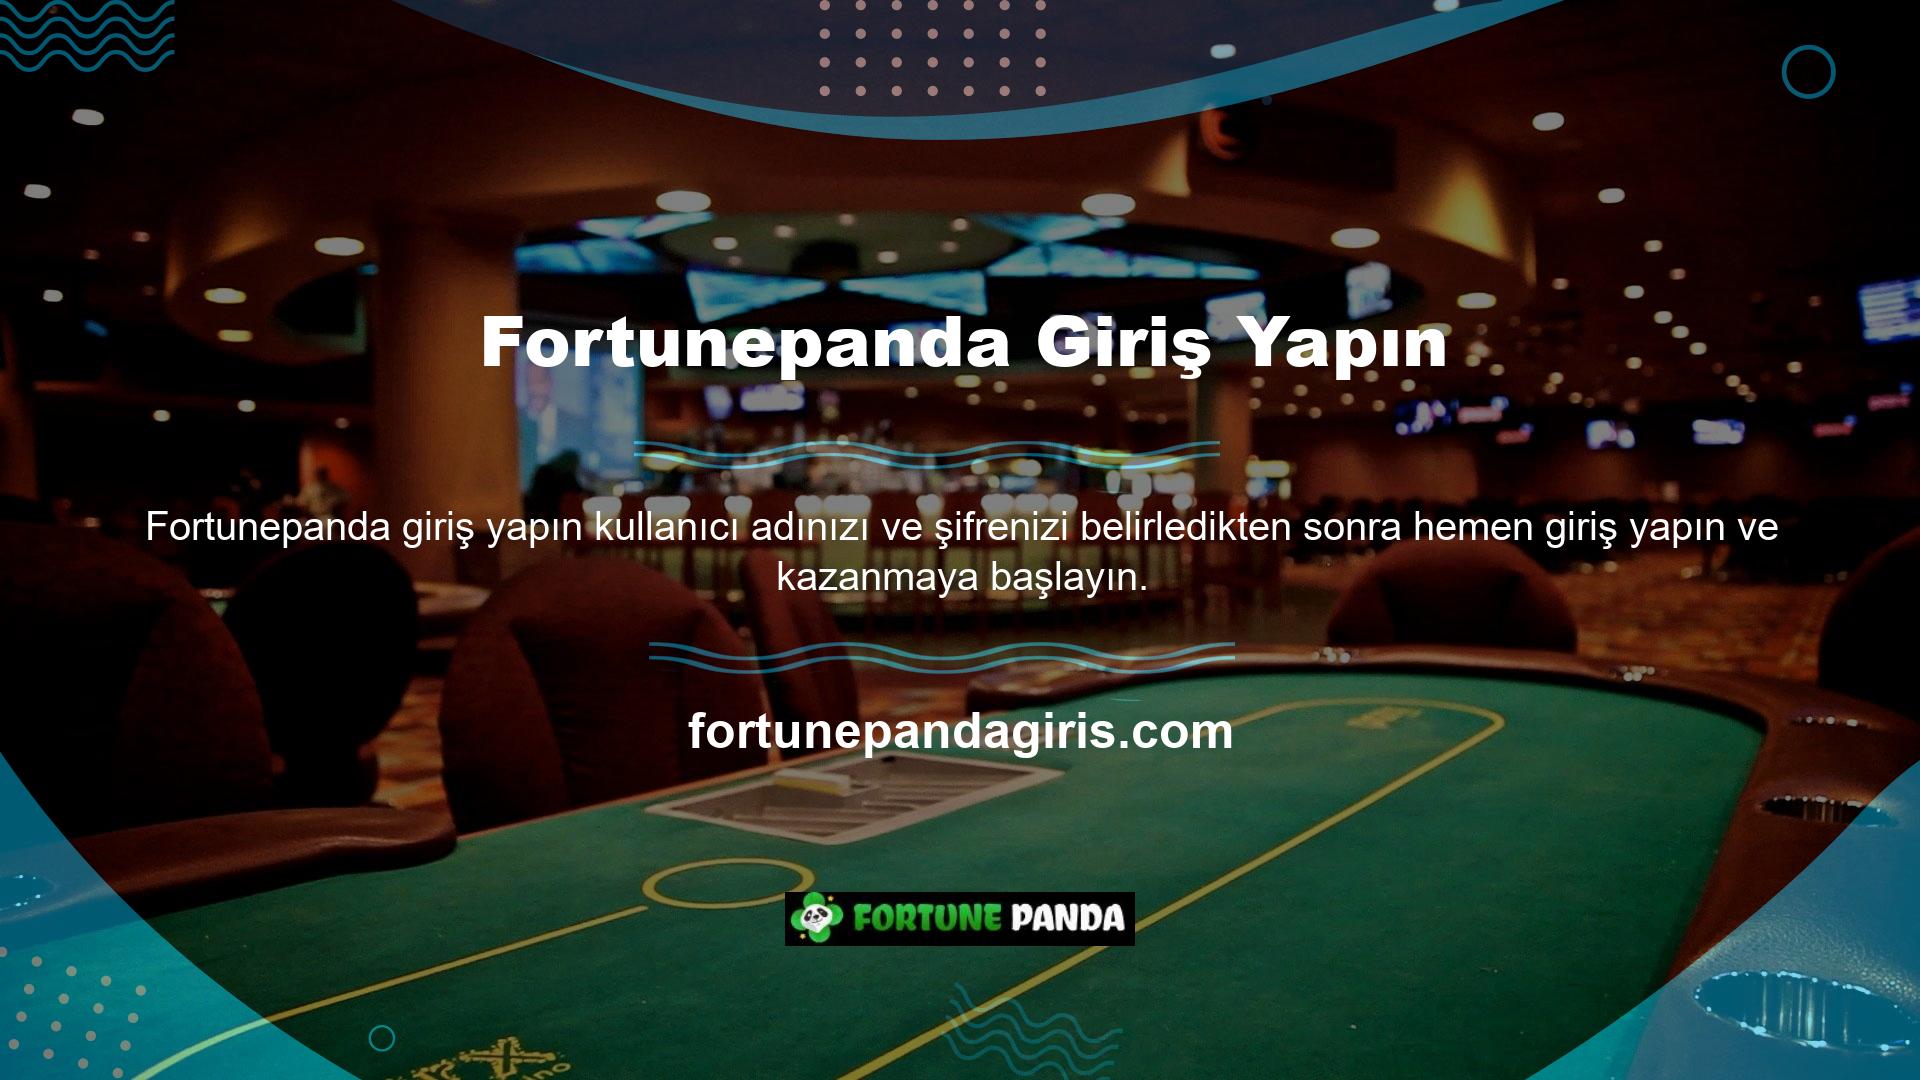 Bu bahis sitesi hem online bahis hem de canlı casino oyunlarını içermekte olup, hem mobil hem de masaüstü cihazlarda para kazanmaktadır